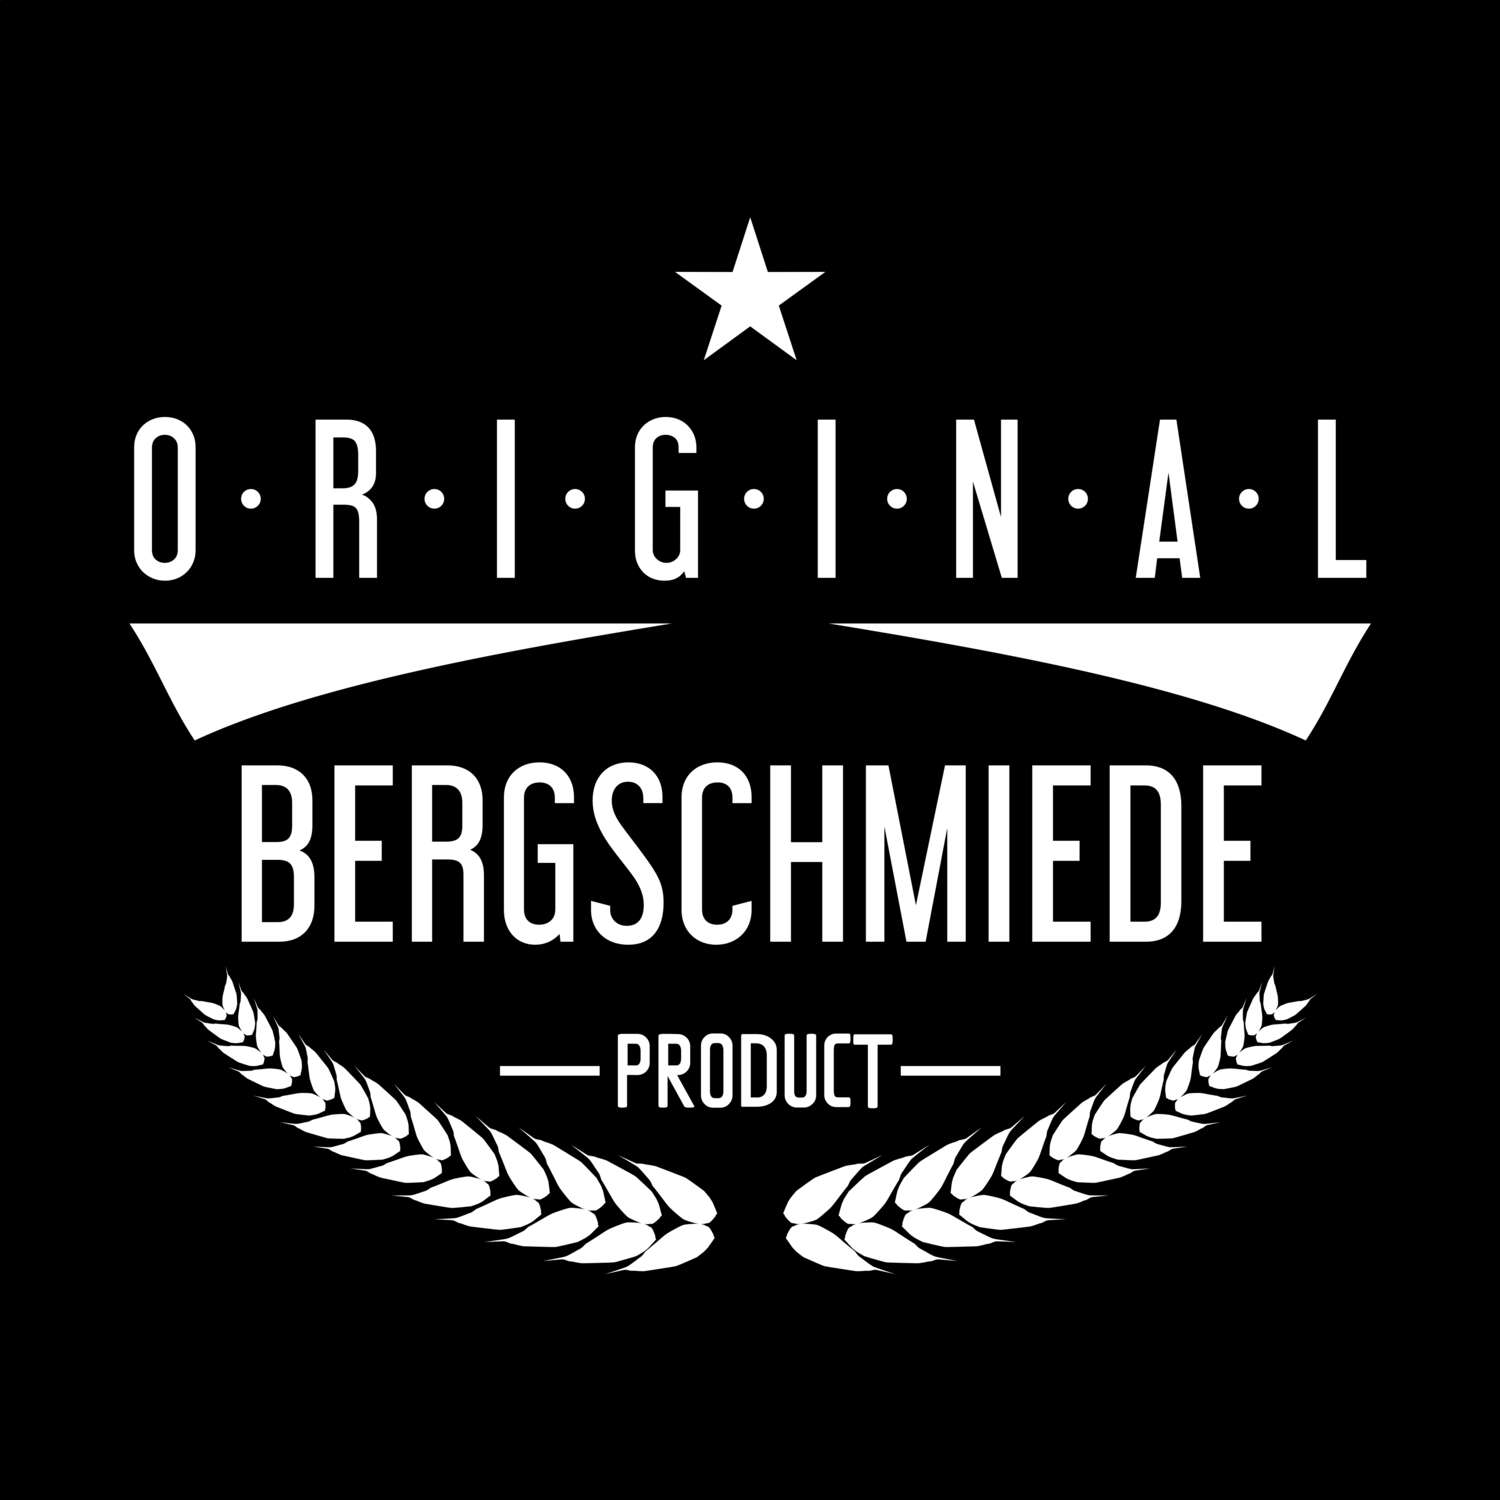 Bergschmiede T-Shirt »Original Product«